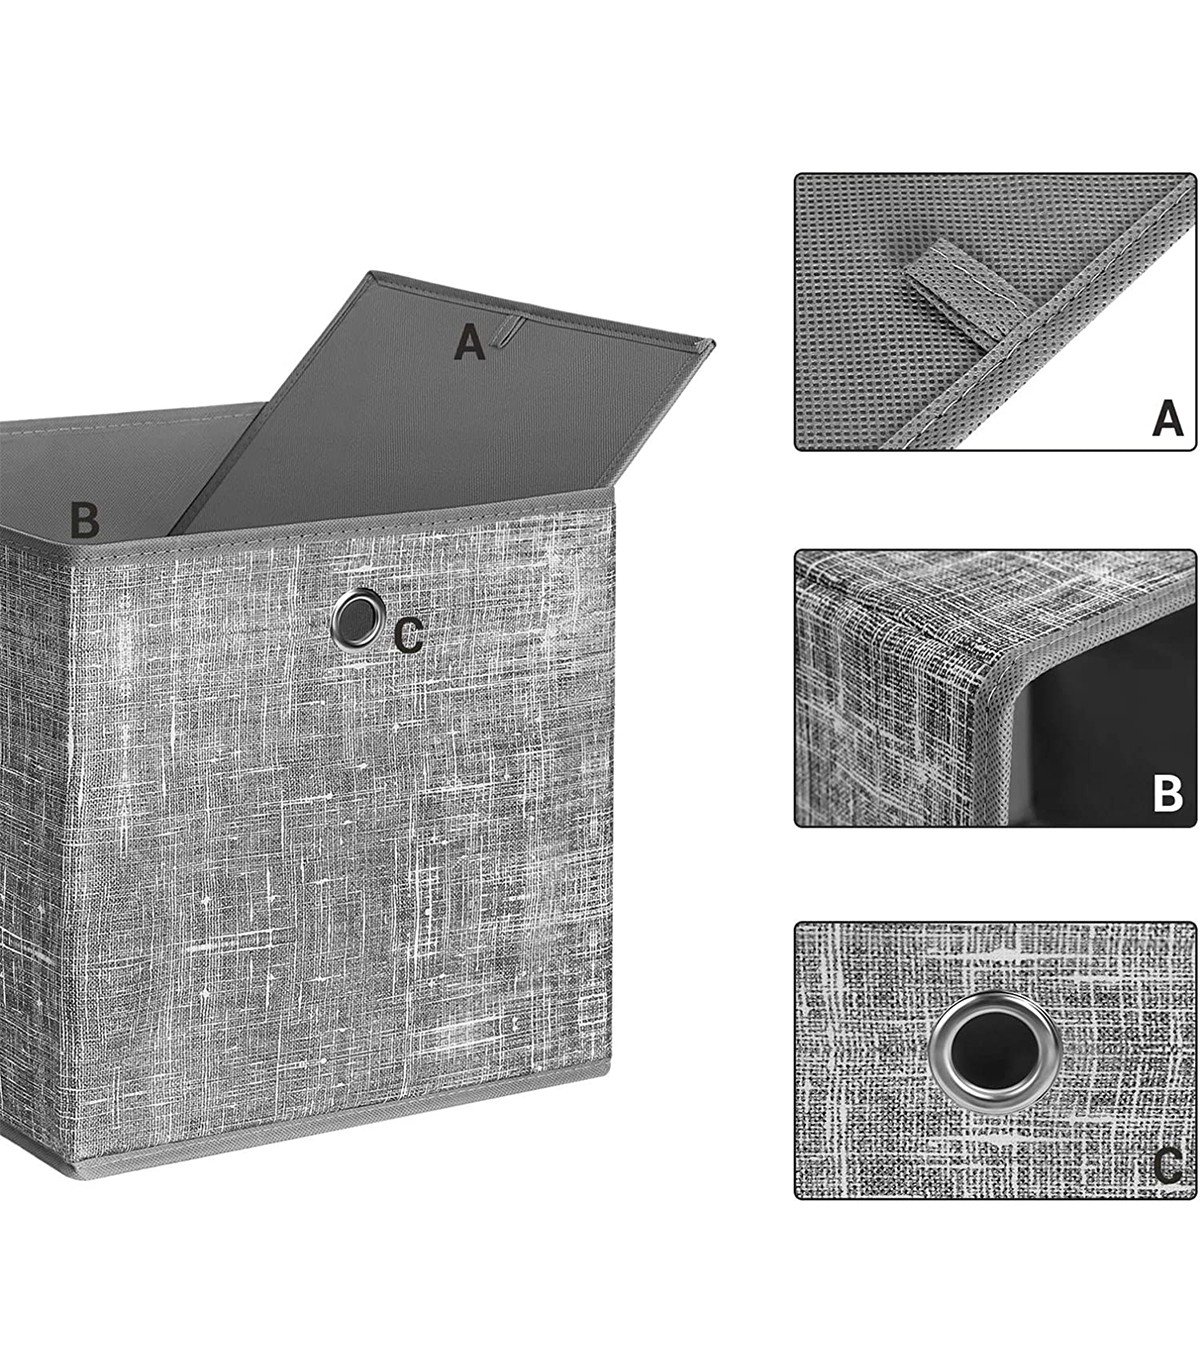 Cube de rangement en tissu pour enfant - 30x30x30 - Original - ON